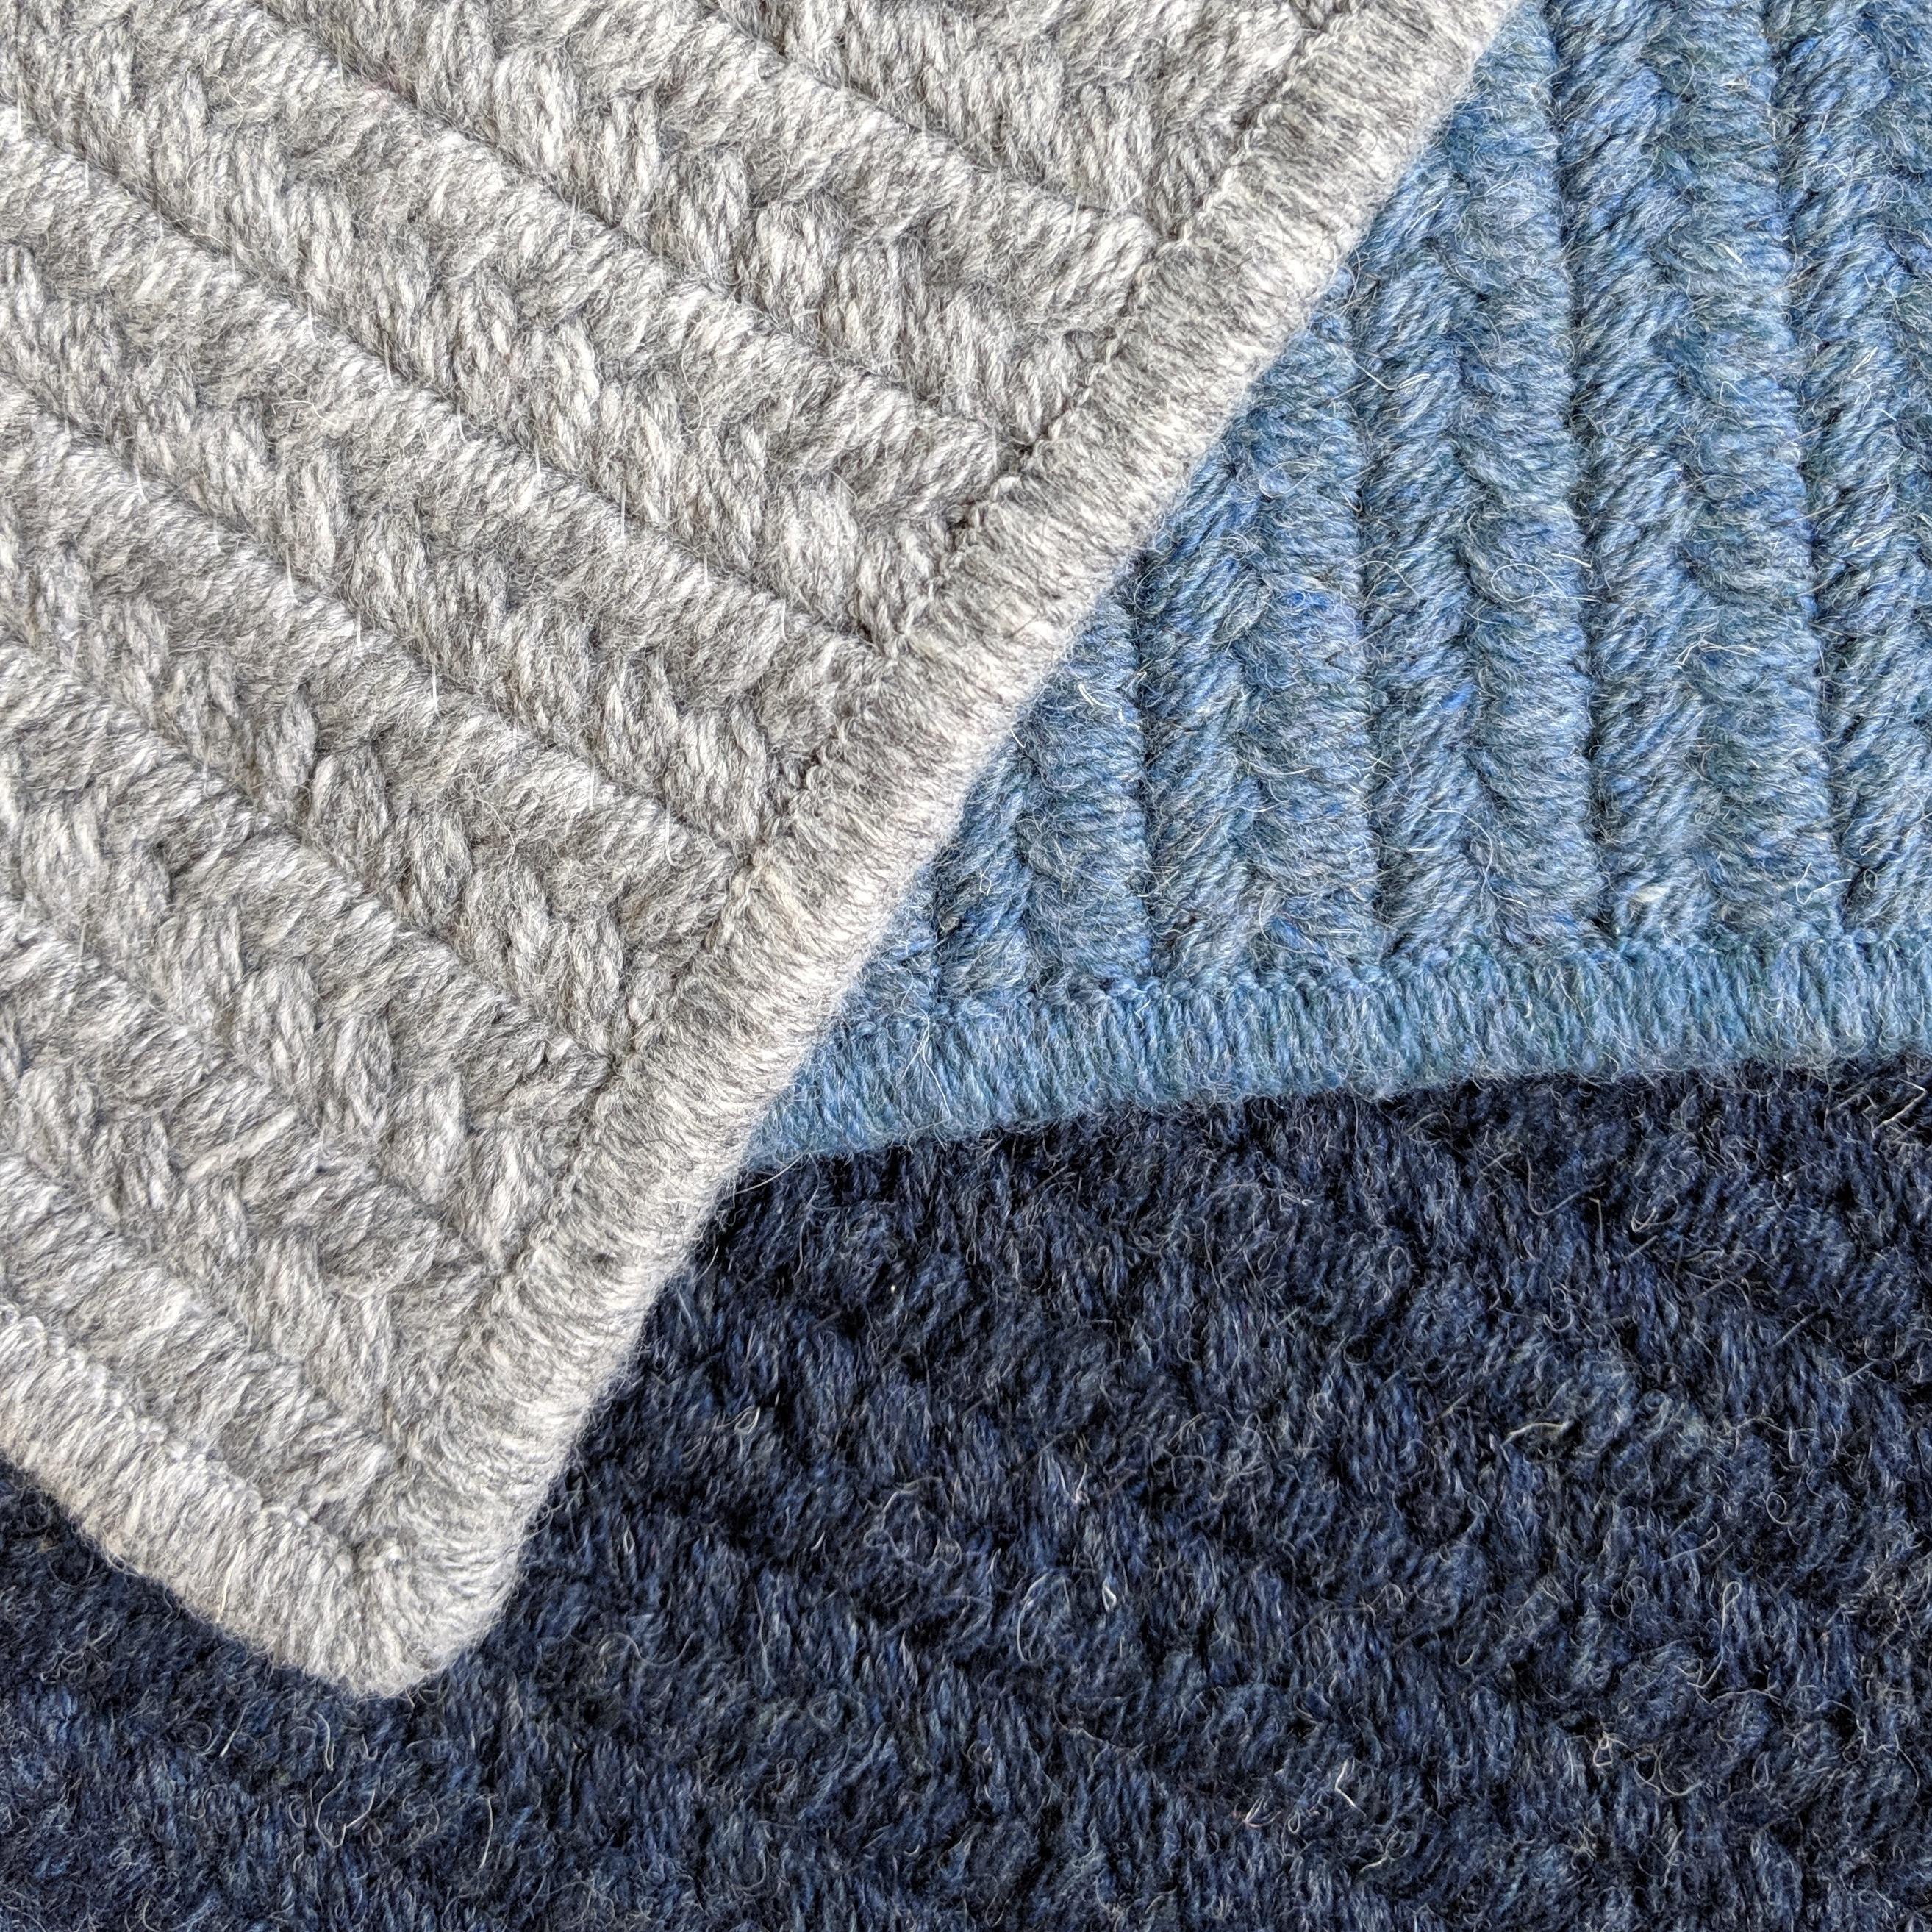 Diese Auflistung ist für einen 12 x 15 Teppich in den Farben, die im ersten Bild gezeigt werden, plus ein rug pad für Gebrauch auf harten Oberflächen.

Wir bieten eine Reihe von verschiedenen Farben an. Wir können die Farben entsprechend dem